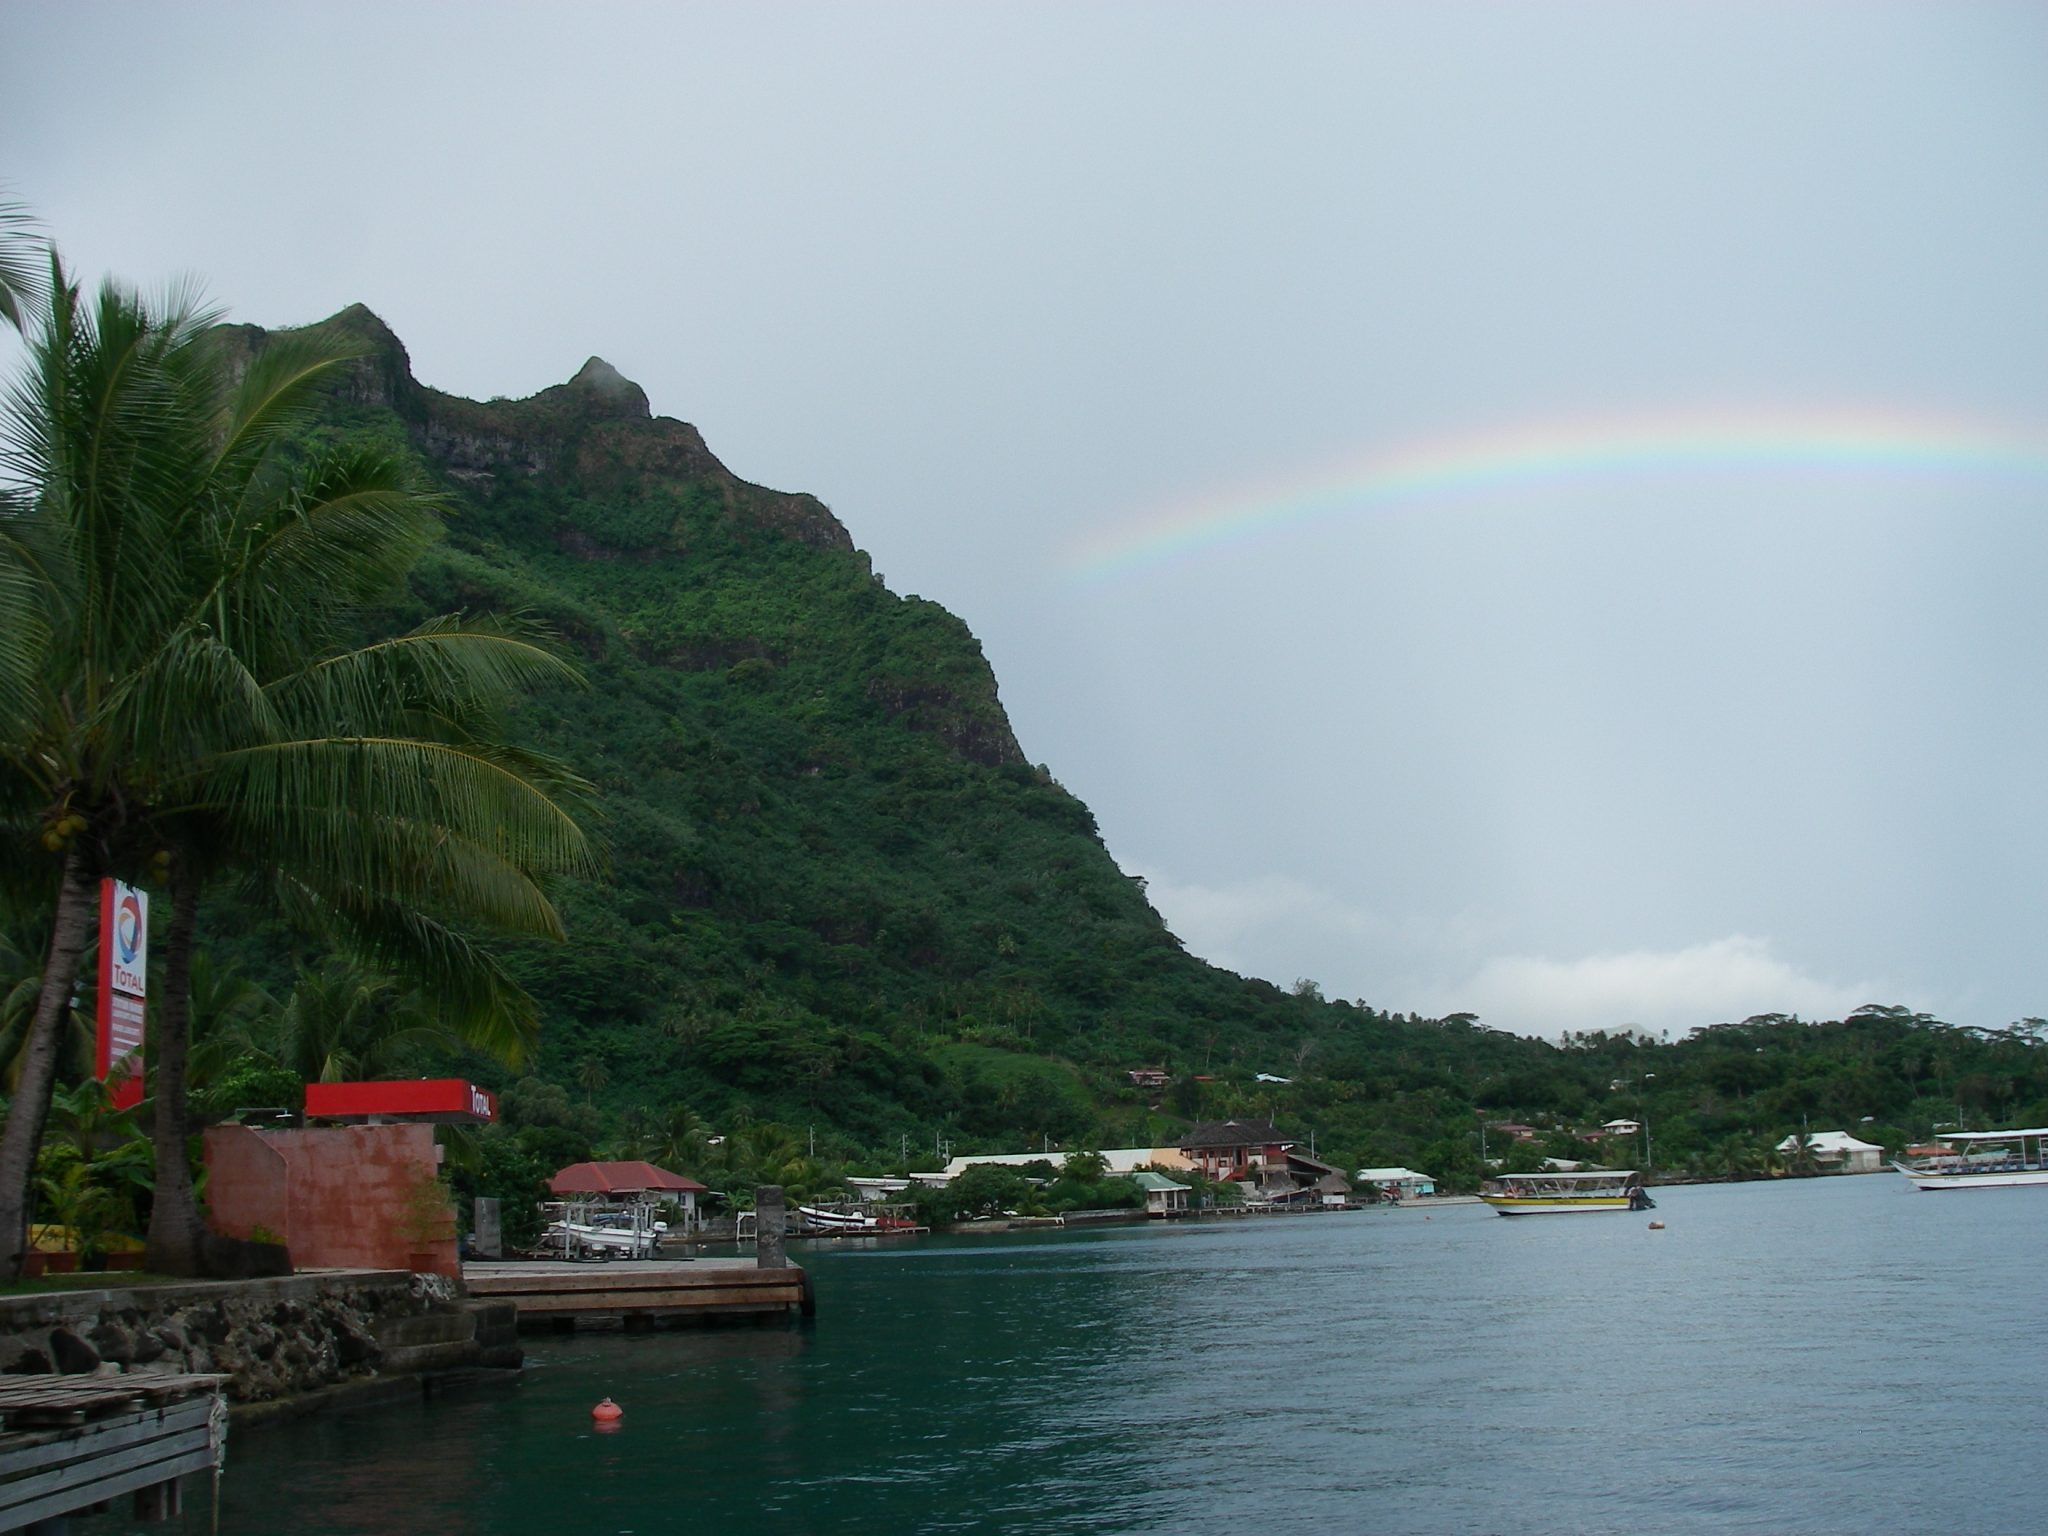 21. A rainbow near Joyful reminds us of God's promise!